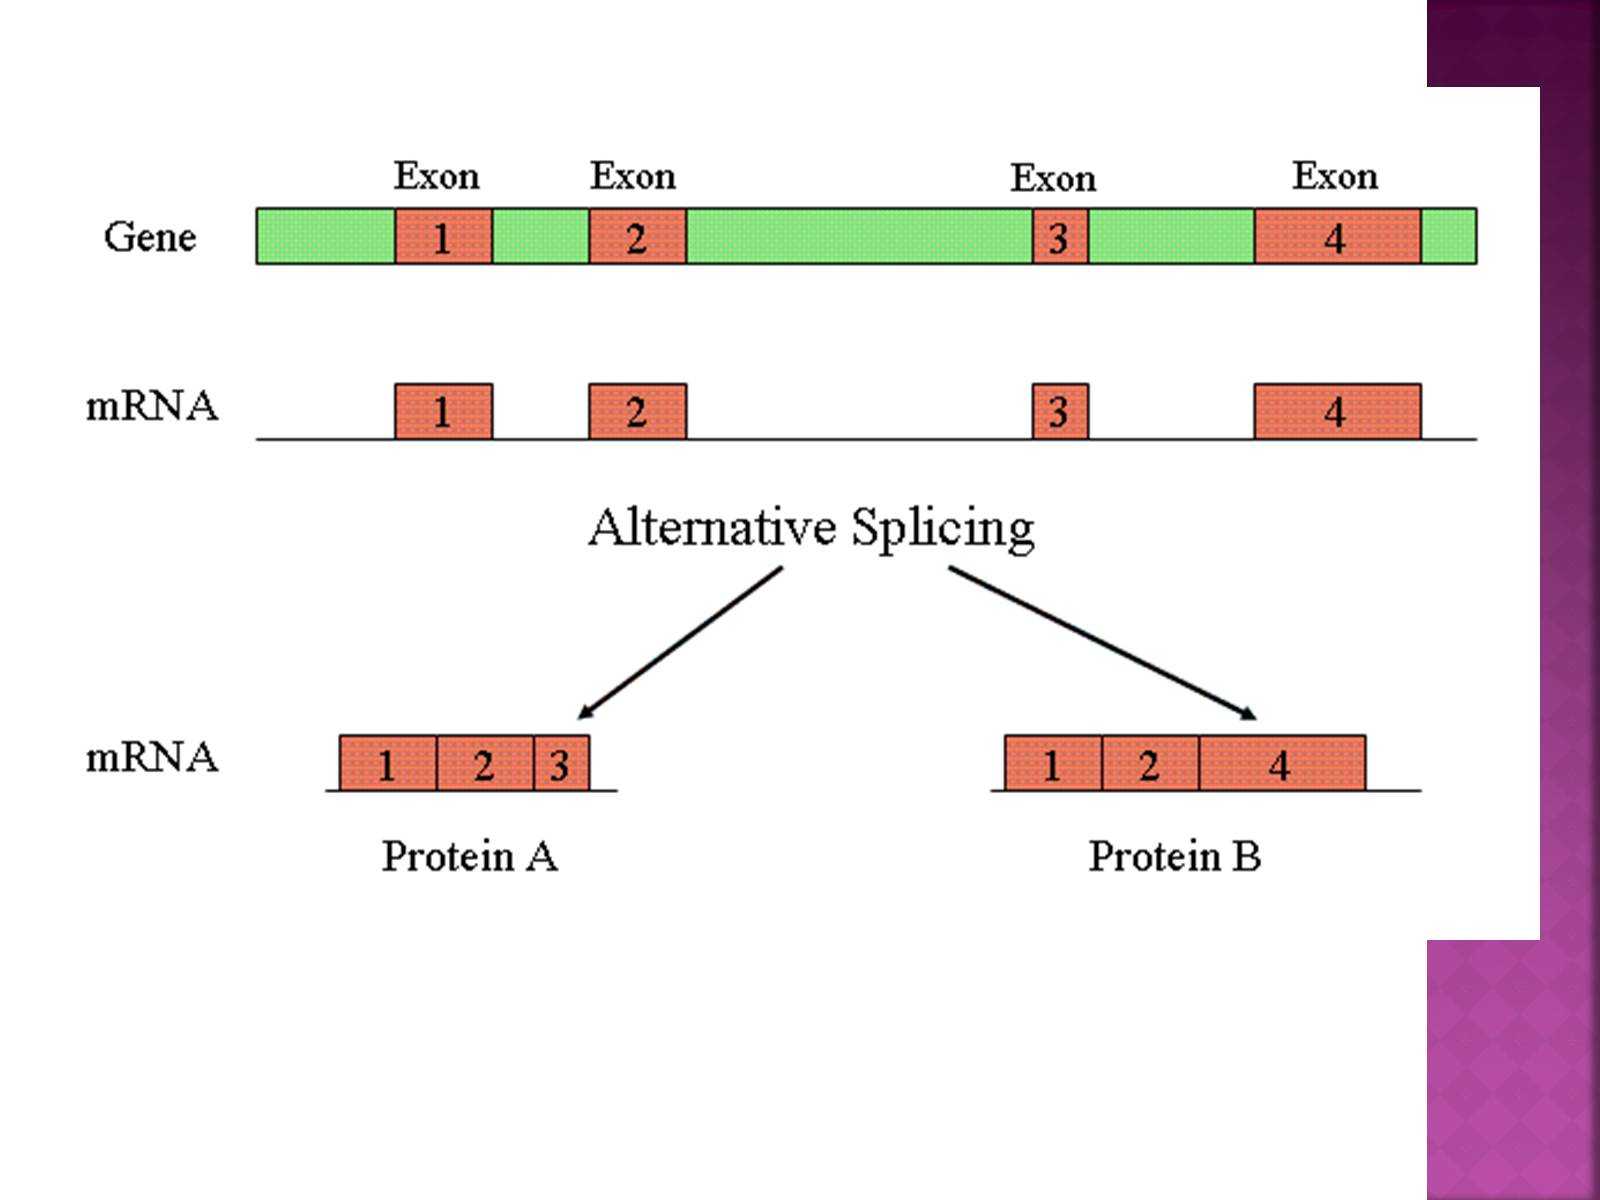 Альтернативный сплайсинг — механизм редактирования молекул РНК, благодаря которому на основе одного и того же гена может синтезироваться несколько вариантов изоформ белковой молекулы Анализ 400 млн фрагментов РНК из разных тканей и органов показал, что 94